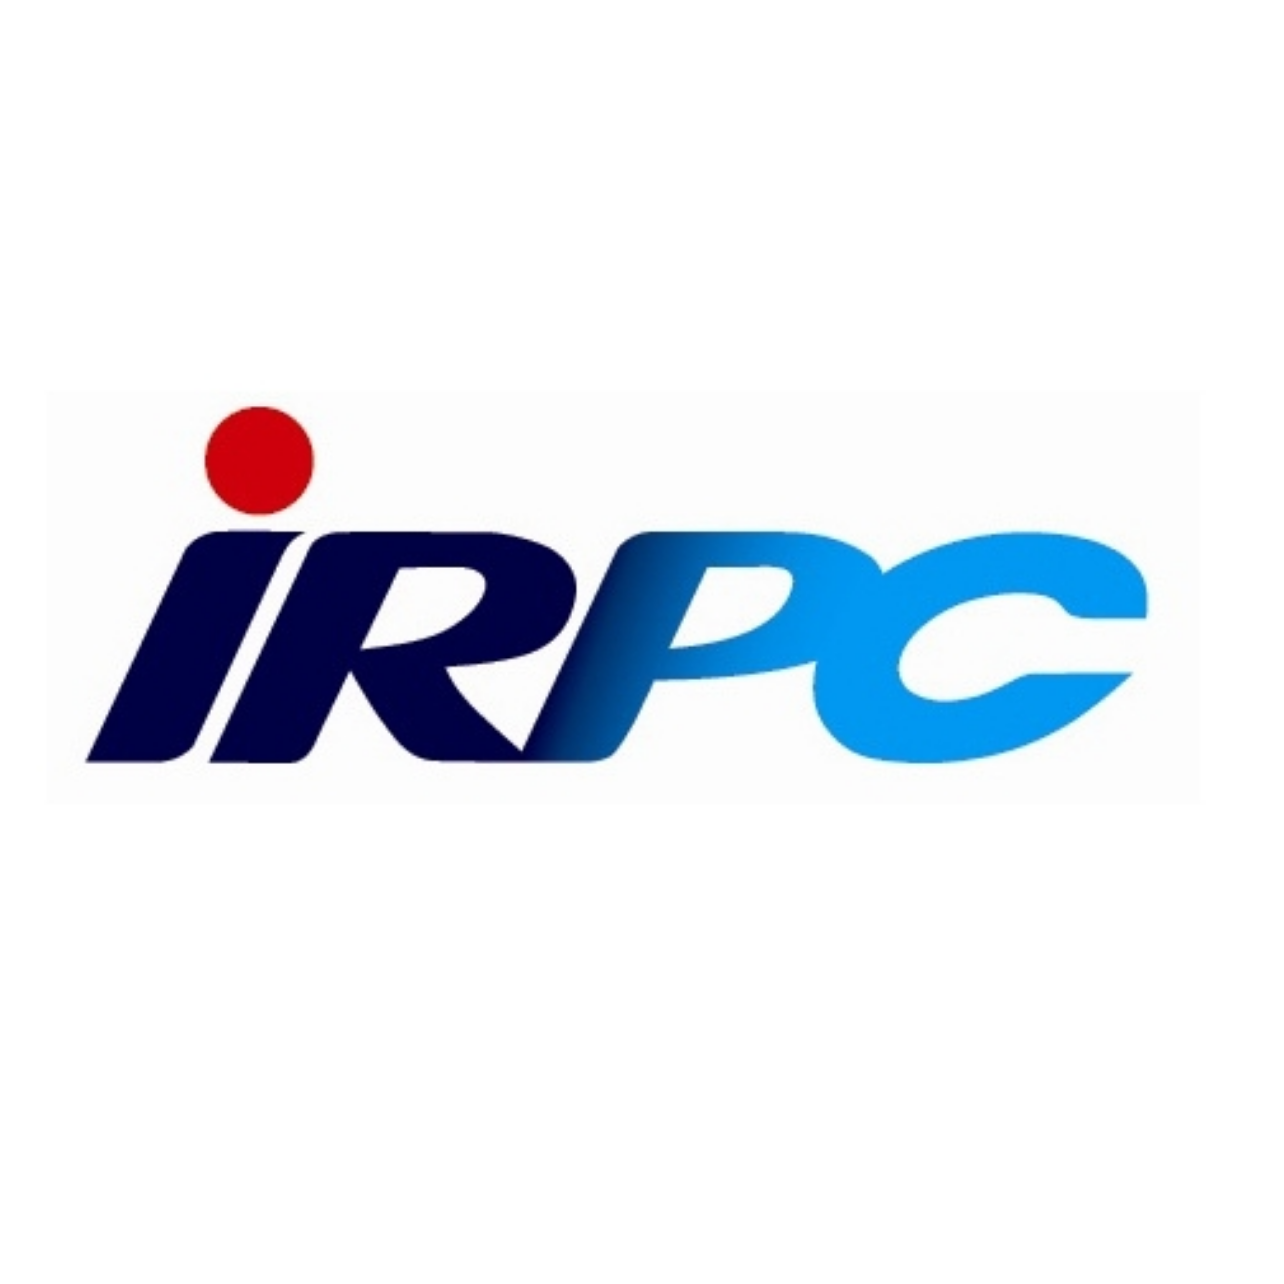 IRPC บริษัท ไออาร์พีซี จำกัด (มหาชน)